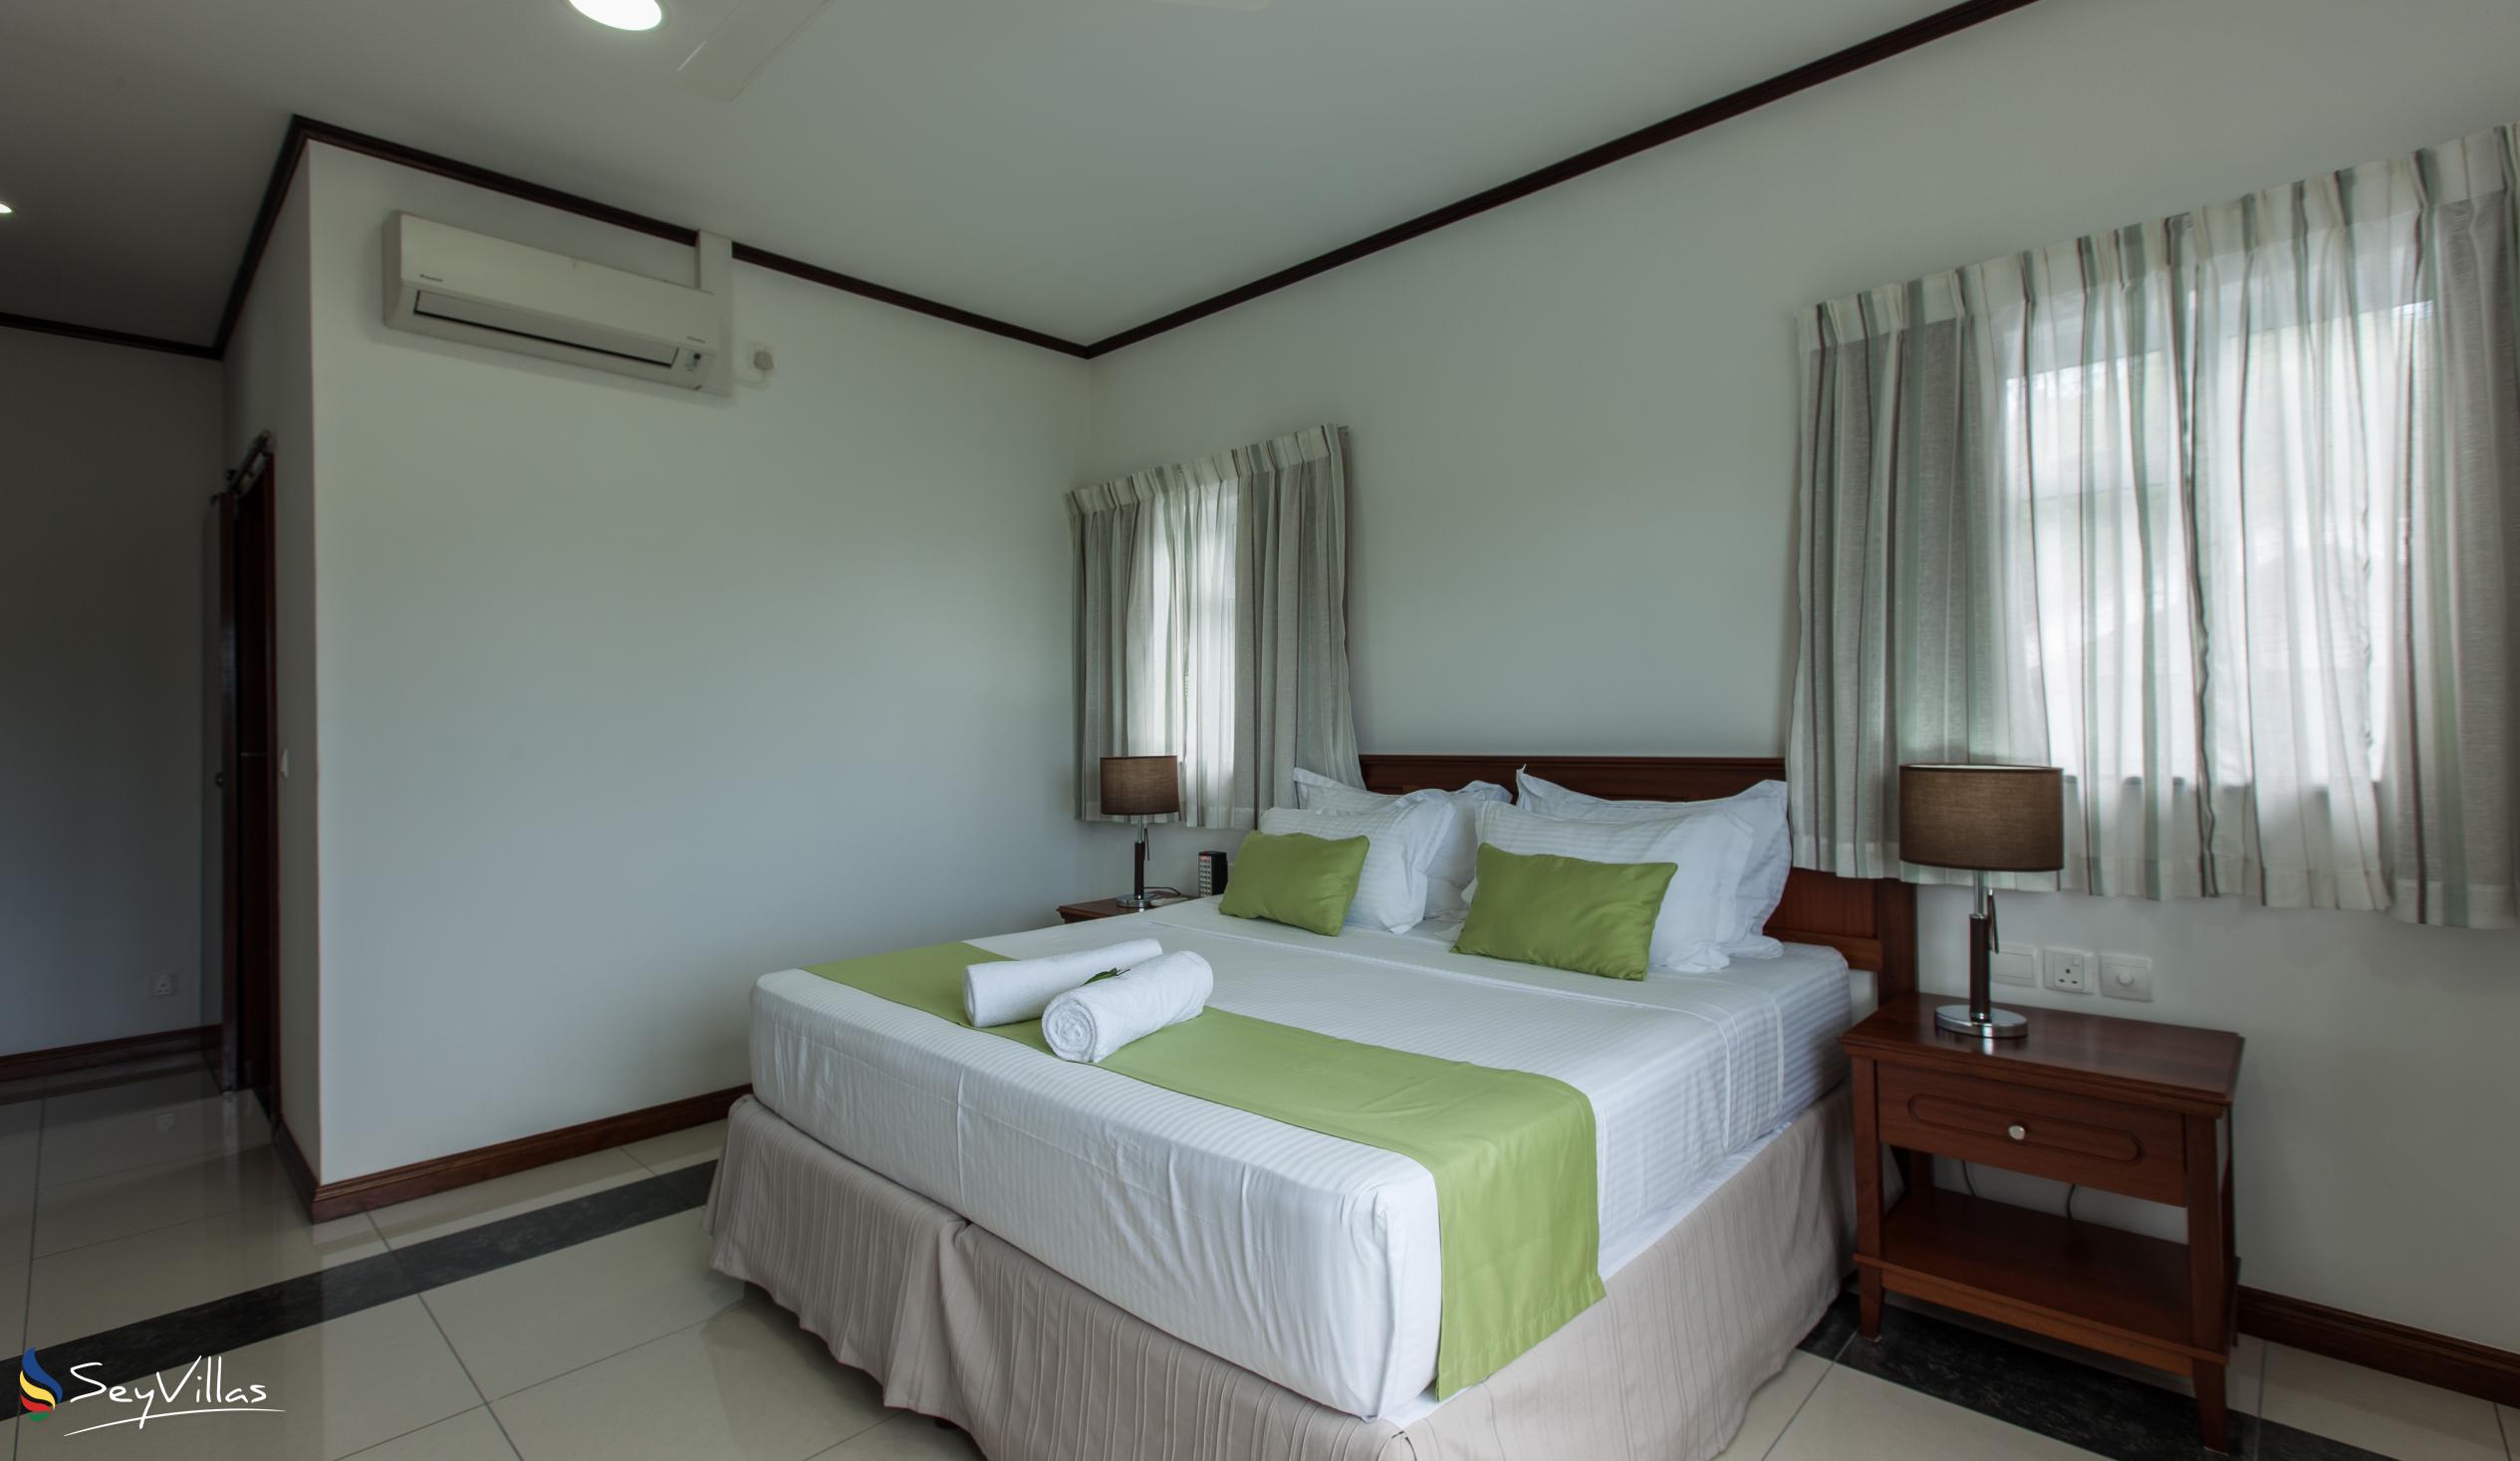 Foto 61: Bambous River Lodge - Appartement 2 chambres - Mahé (Seychelles)